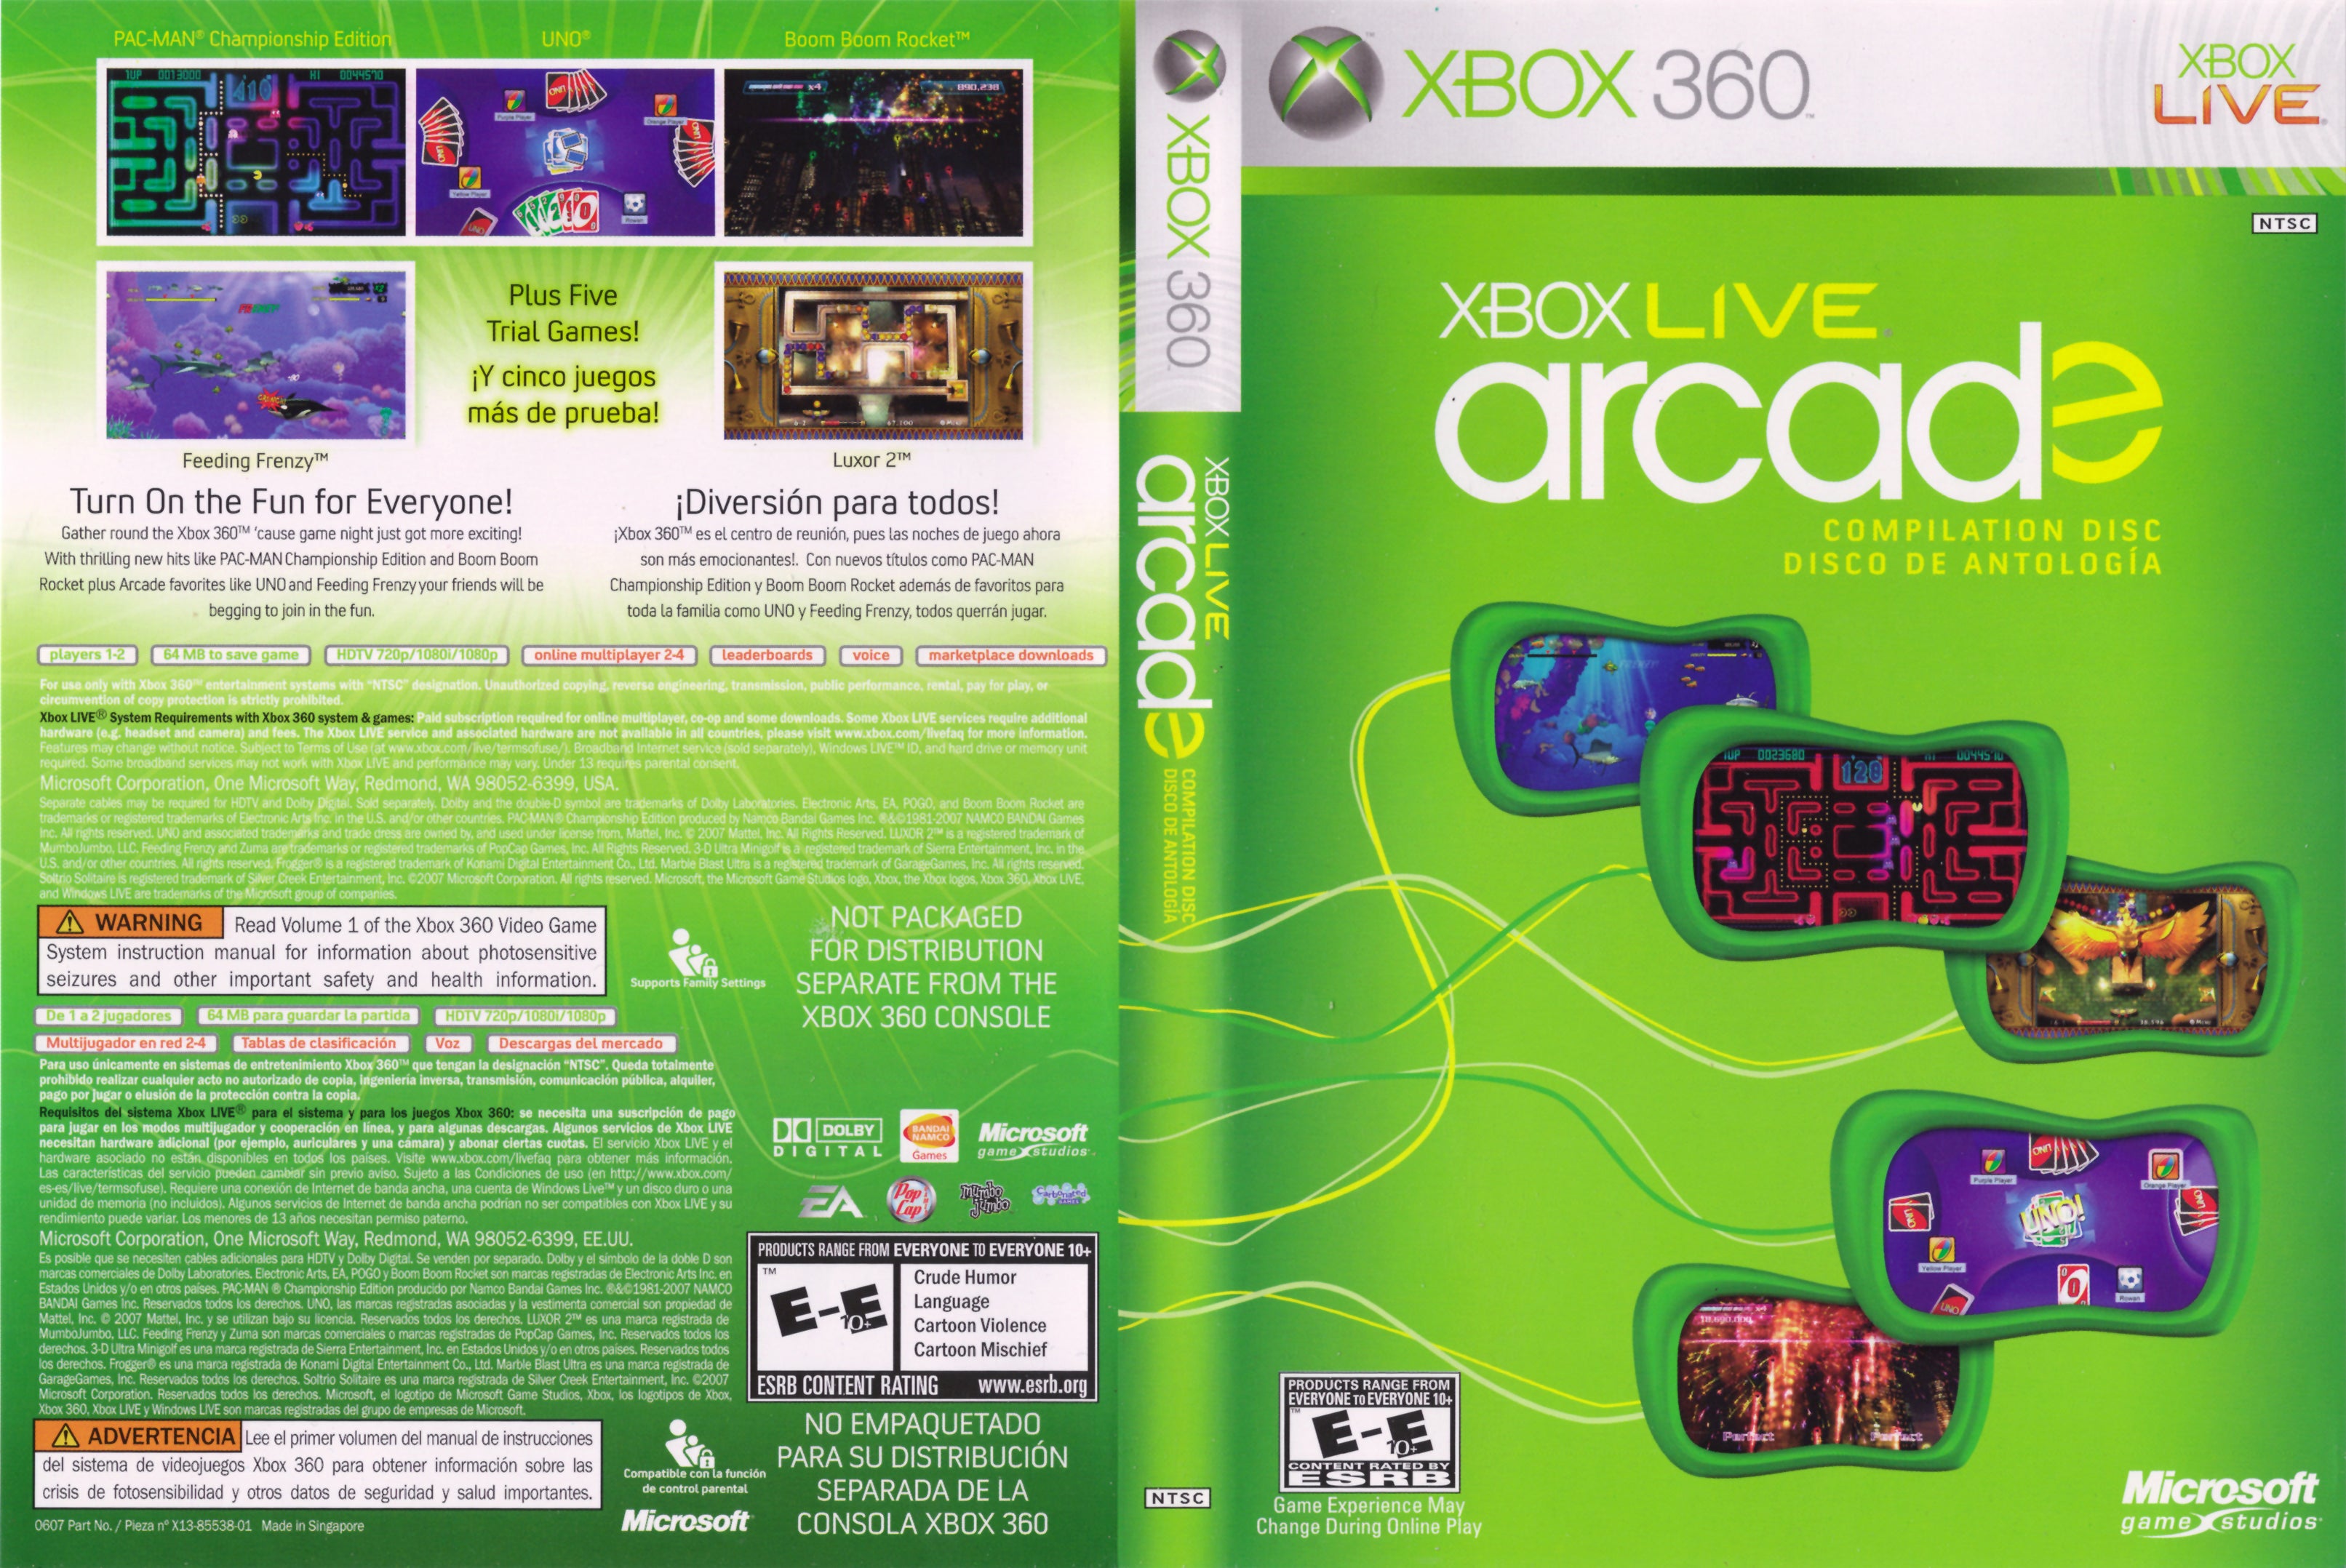 Профили xbox игра. Xbox Live Xbox 360. Xbox Arcade 360 игры диск. Xbox 360 Arcade. Xbox Live Arcade Compilation Disc для Xbox 360.